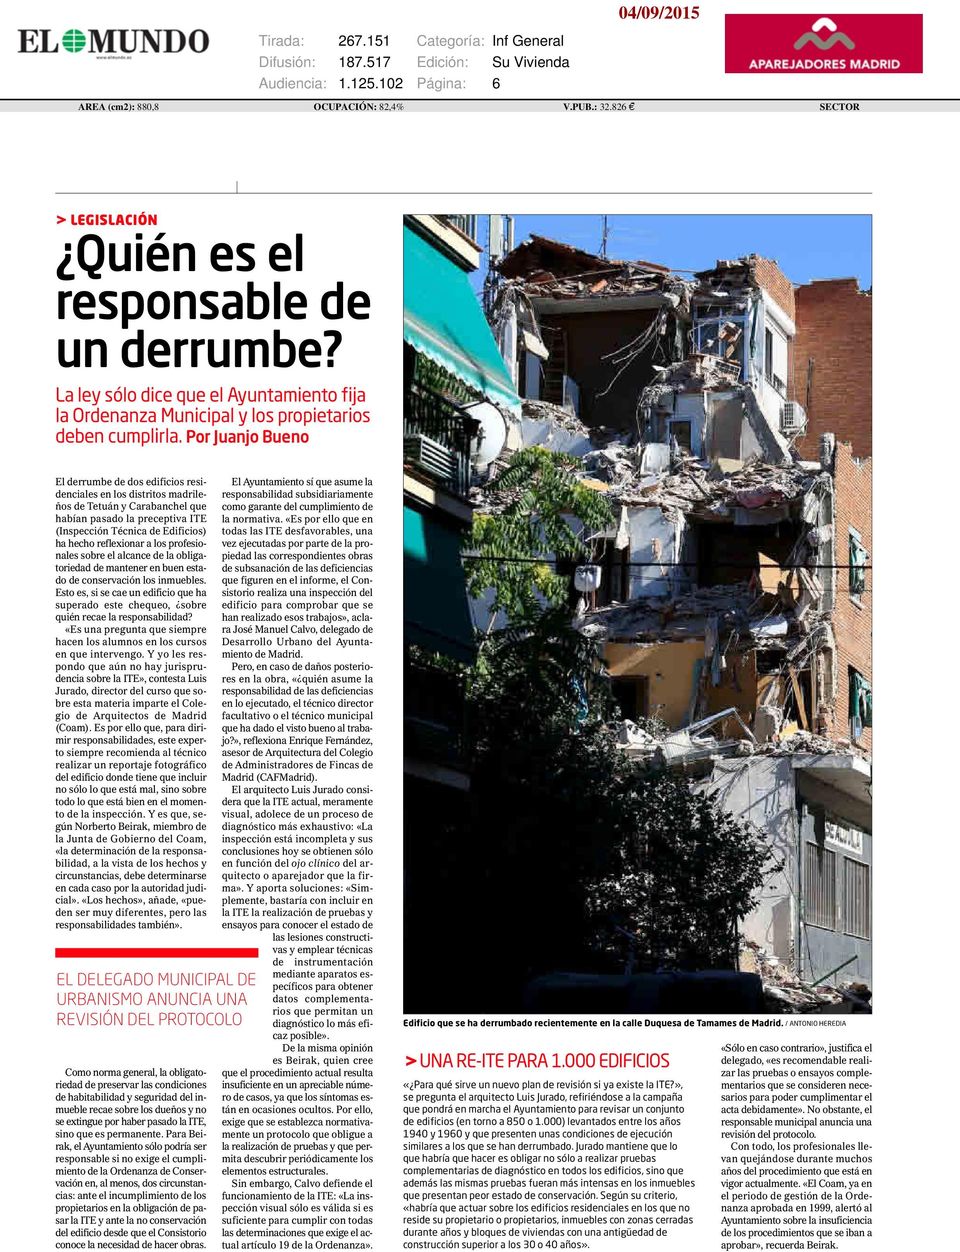 Por Juanjo Bueno El derrumbe de dos edificios residenciales en los distritos madrileños de Tetuán y Carabanchel que habían pasado la preceptiva ITE (Inspección Técnica de Edificios) ha hecho